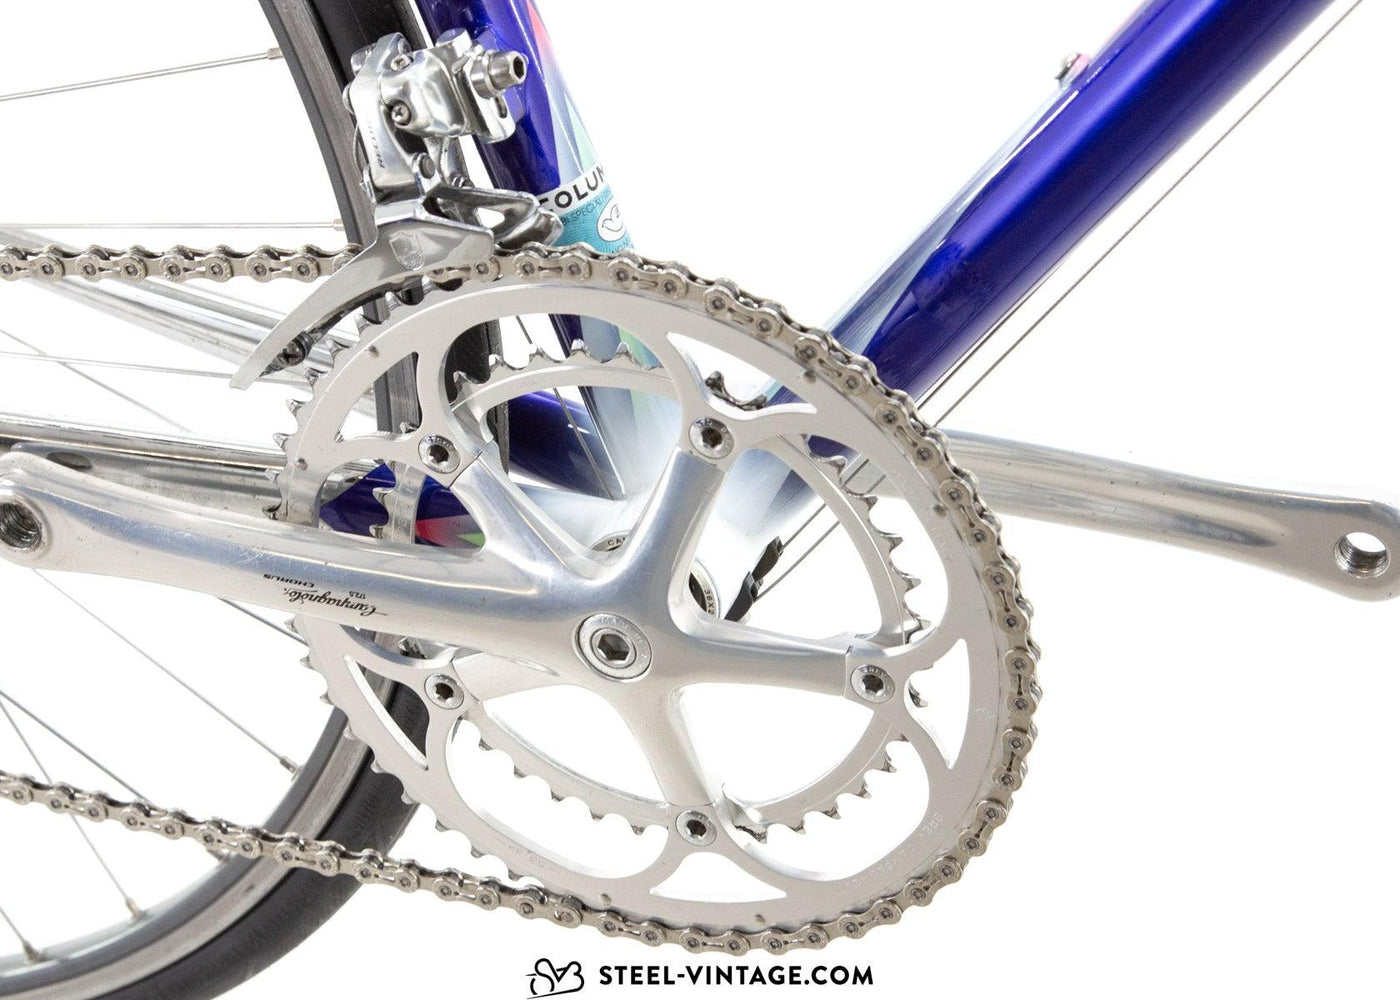 Chesini Genius Road Bicycle 1990s - Steel Vintage Bikes